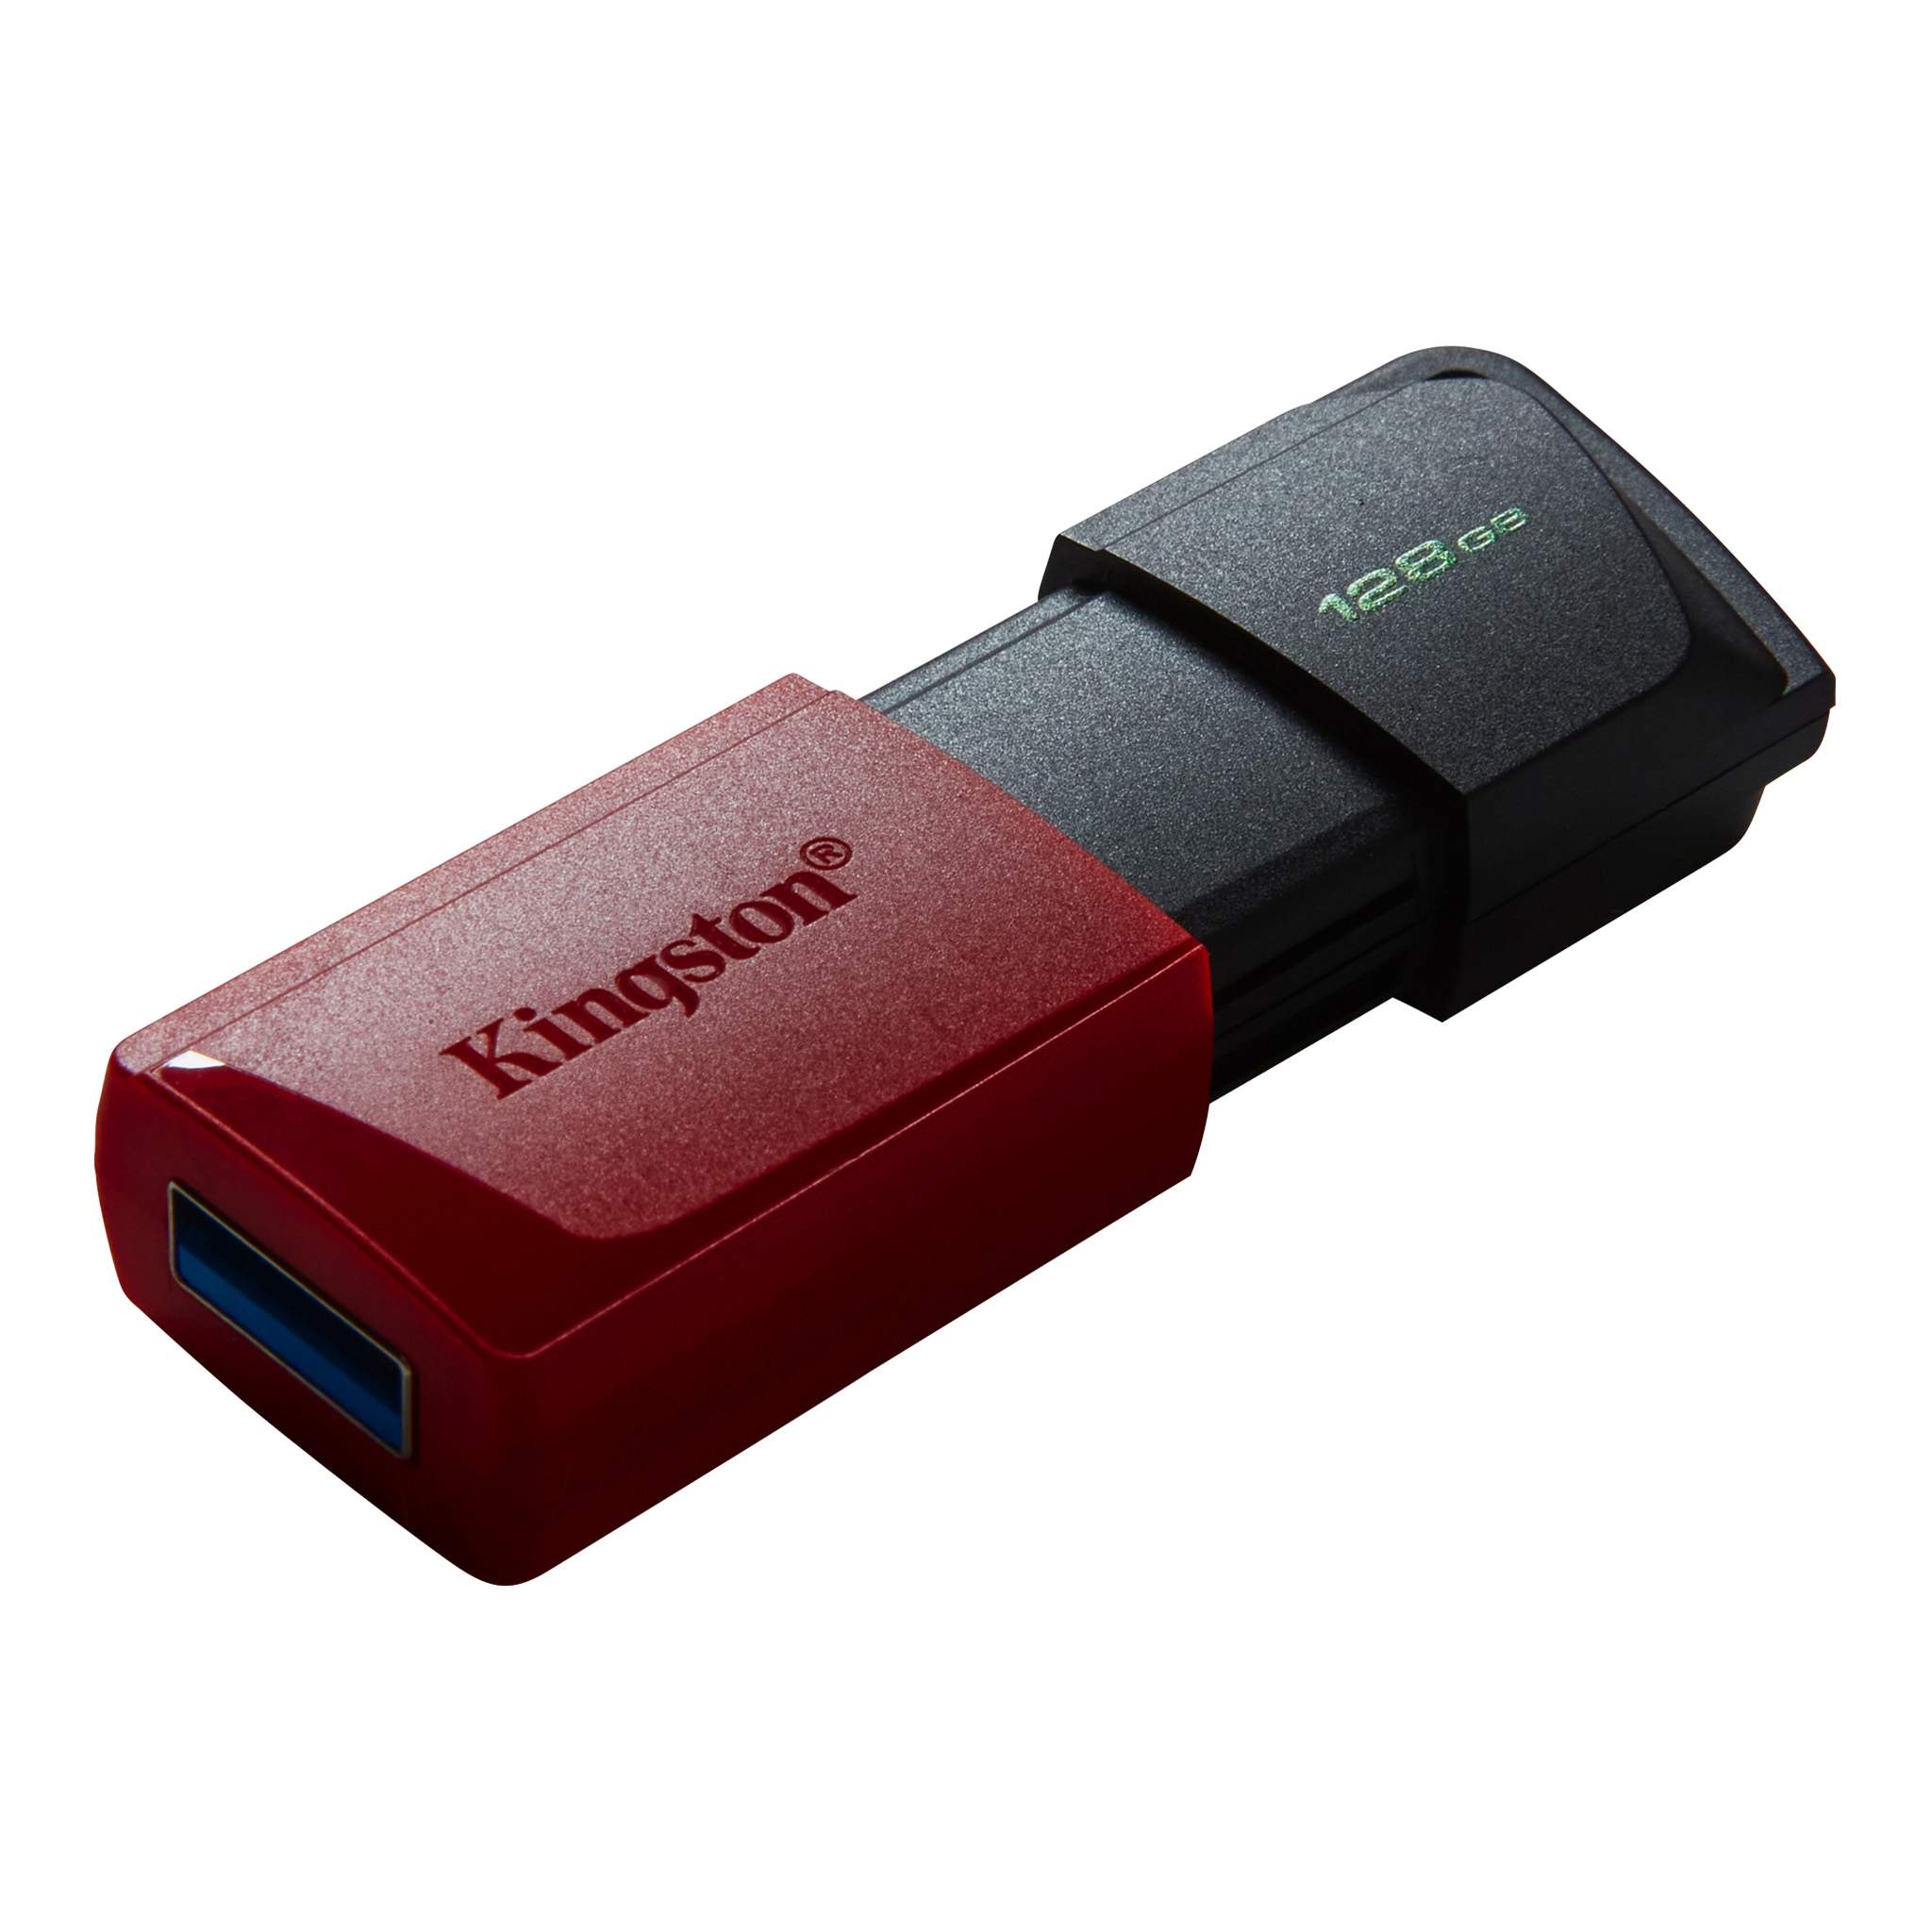 Kingston 128GB DataTraveler Exodia M USB flash drive